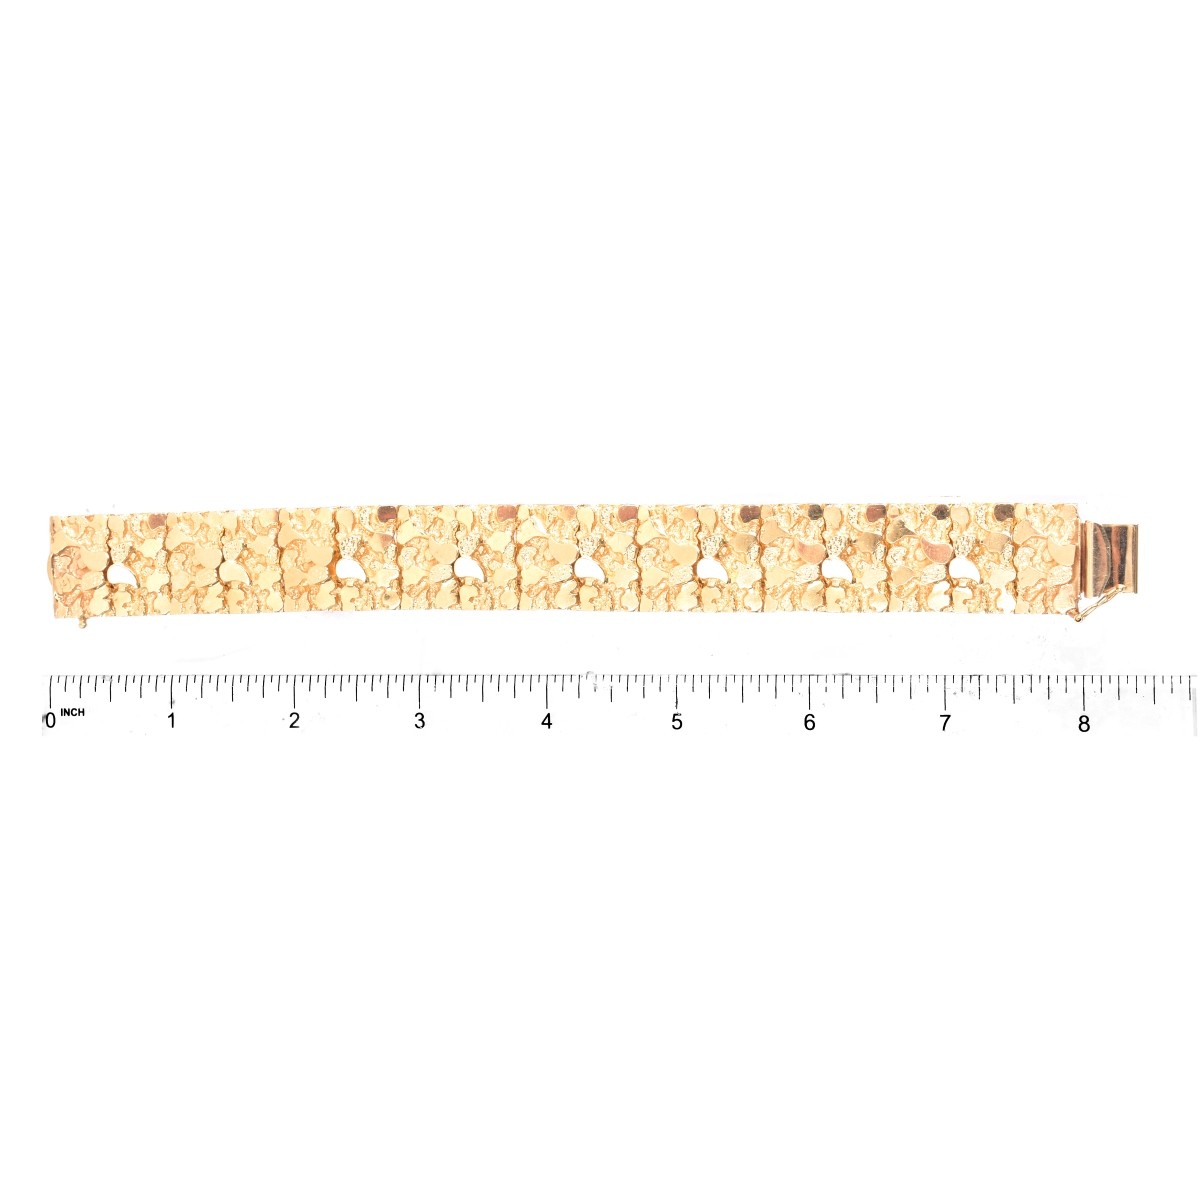 Man's 14K Gold Nugget Bracelet